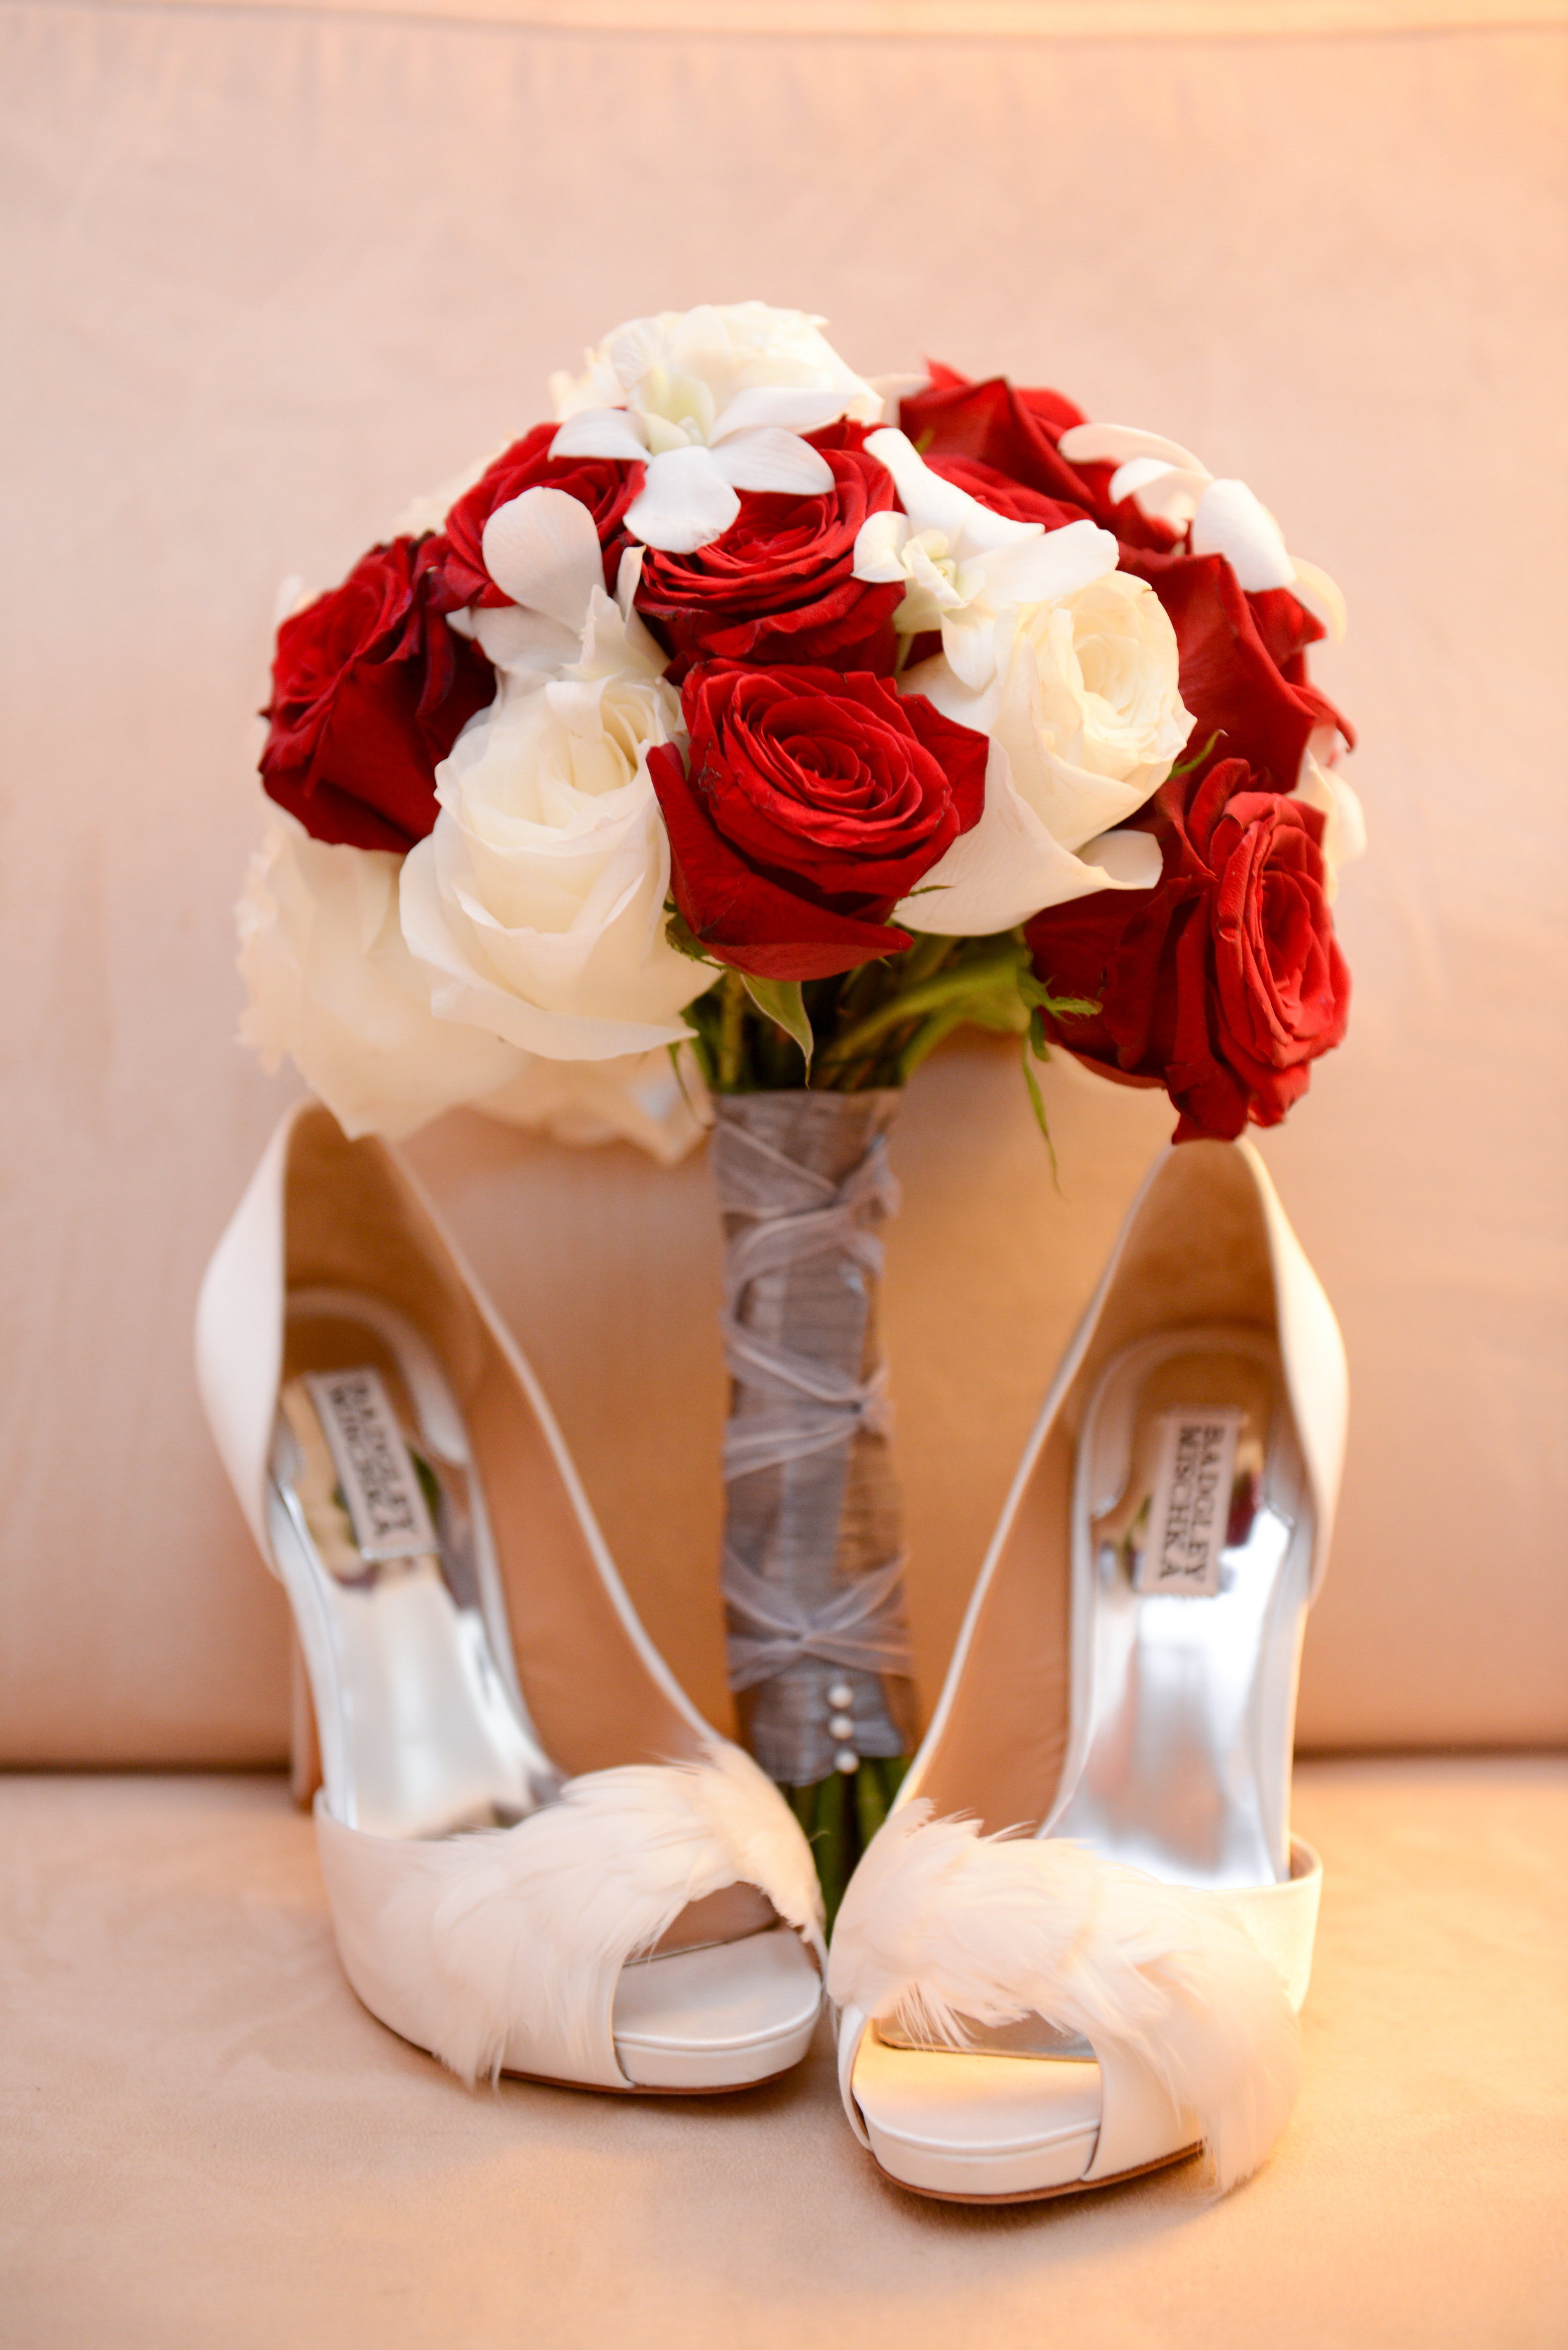 Evelisa Floral & Design: Bride's bouquet